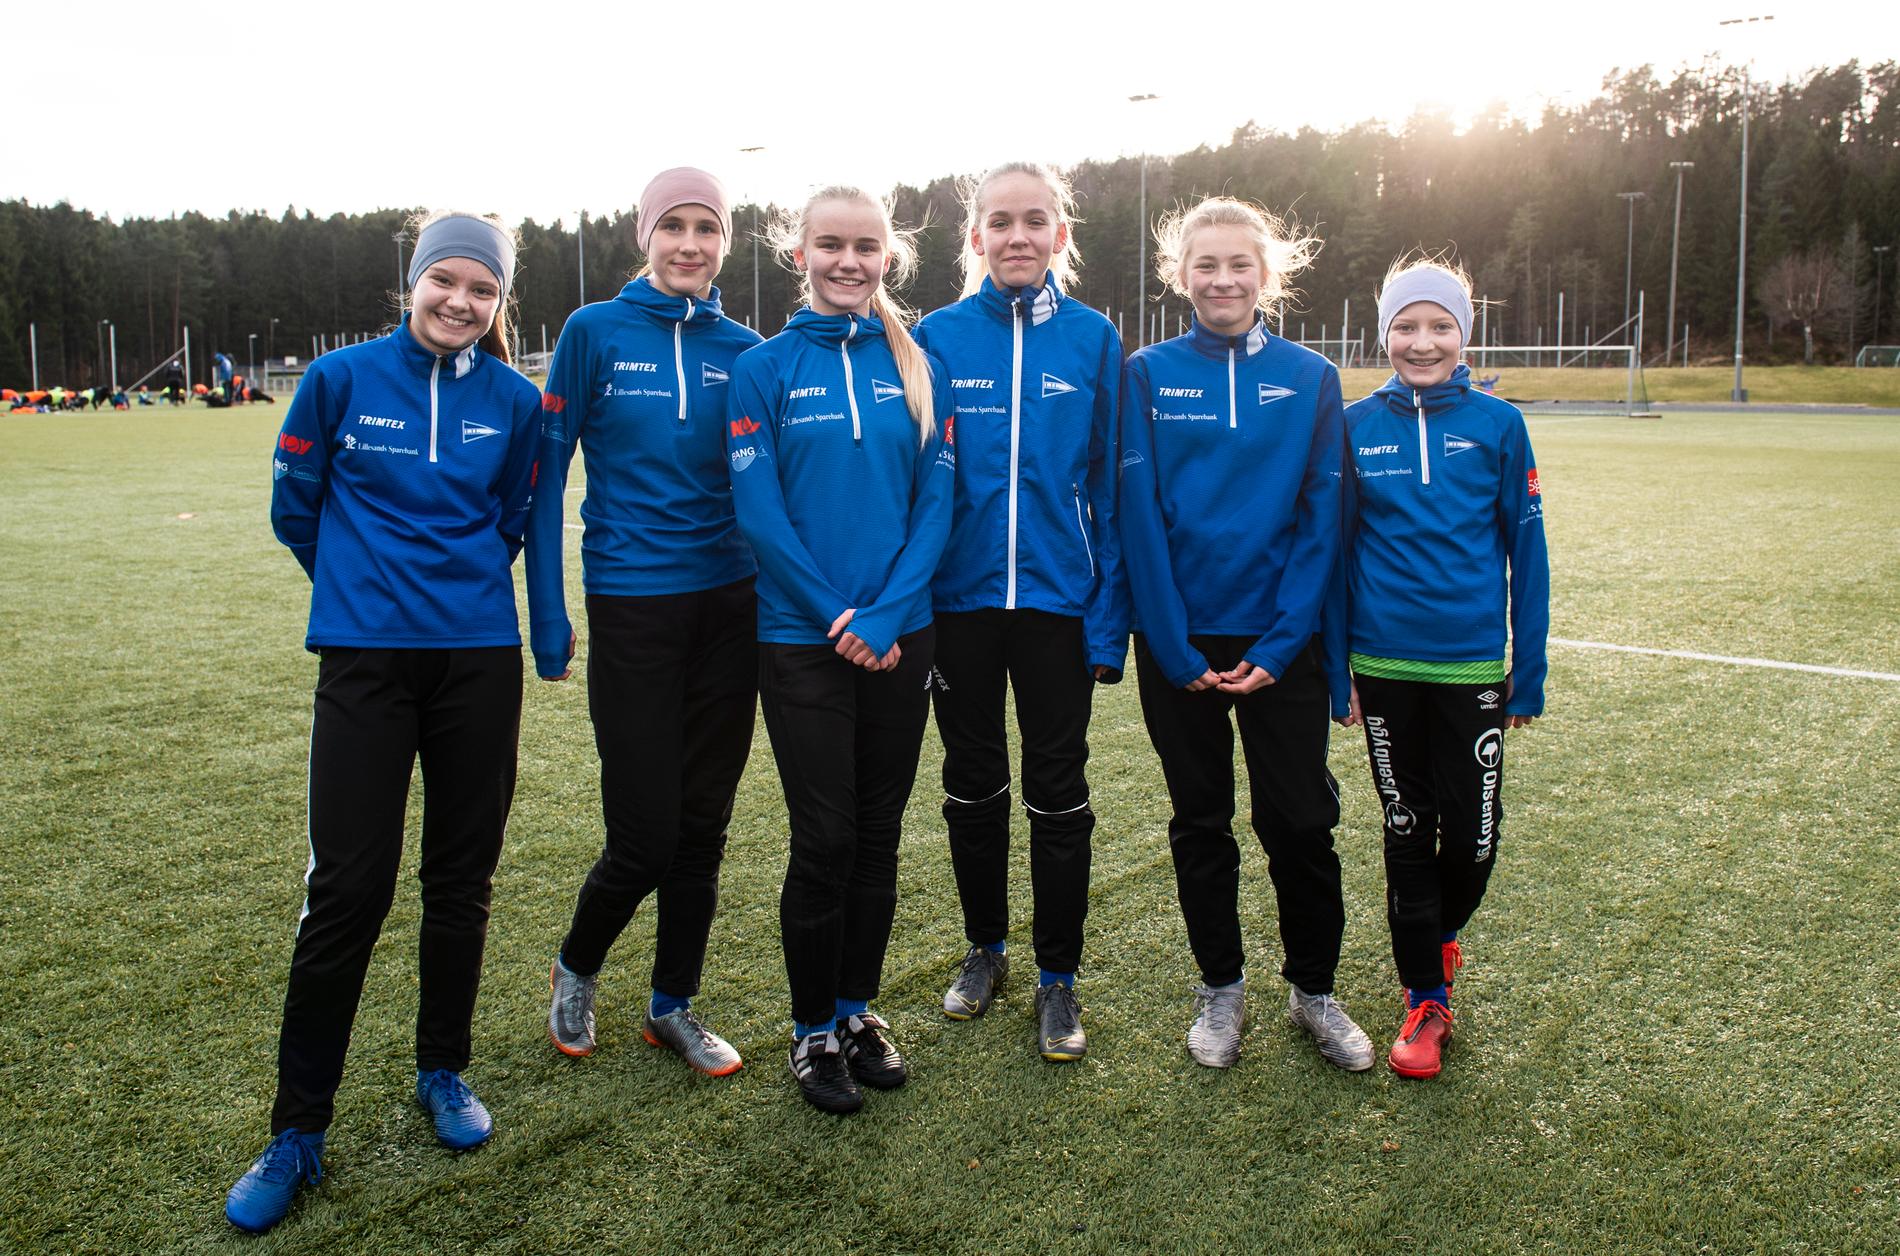 Ida Kjærnes (12), Else Berthelsen (12), Anna Mosby Fuglestad (12), Åse Engemyr (12), Kaia Gregersen (12) og Johanne Valvik Granli (12) og jentene på Lillesands fotball-lag er blitt kjente i hele landet de siste to ukene. 